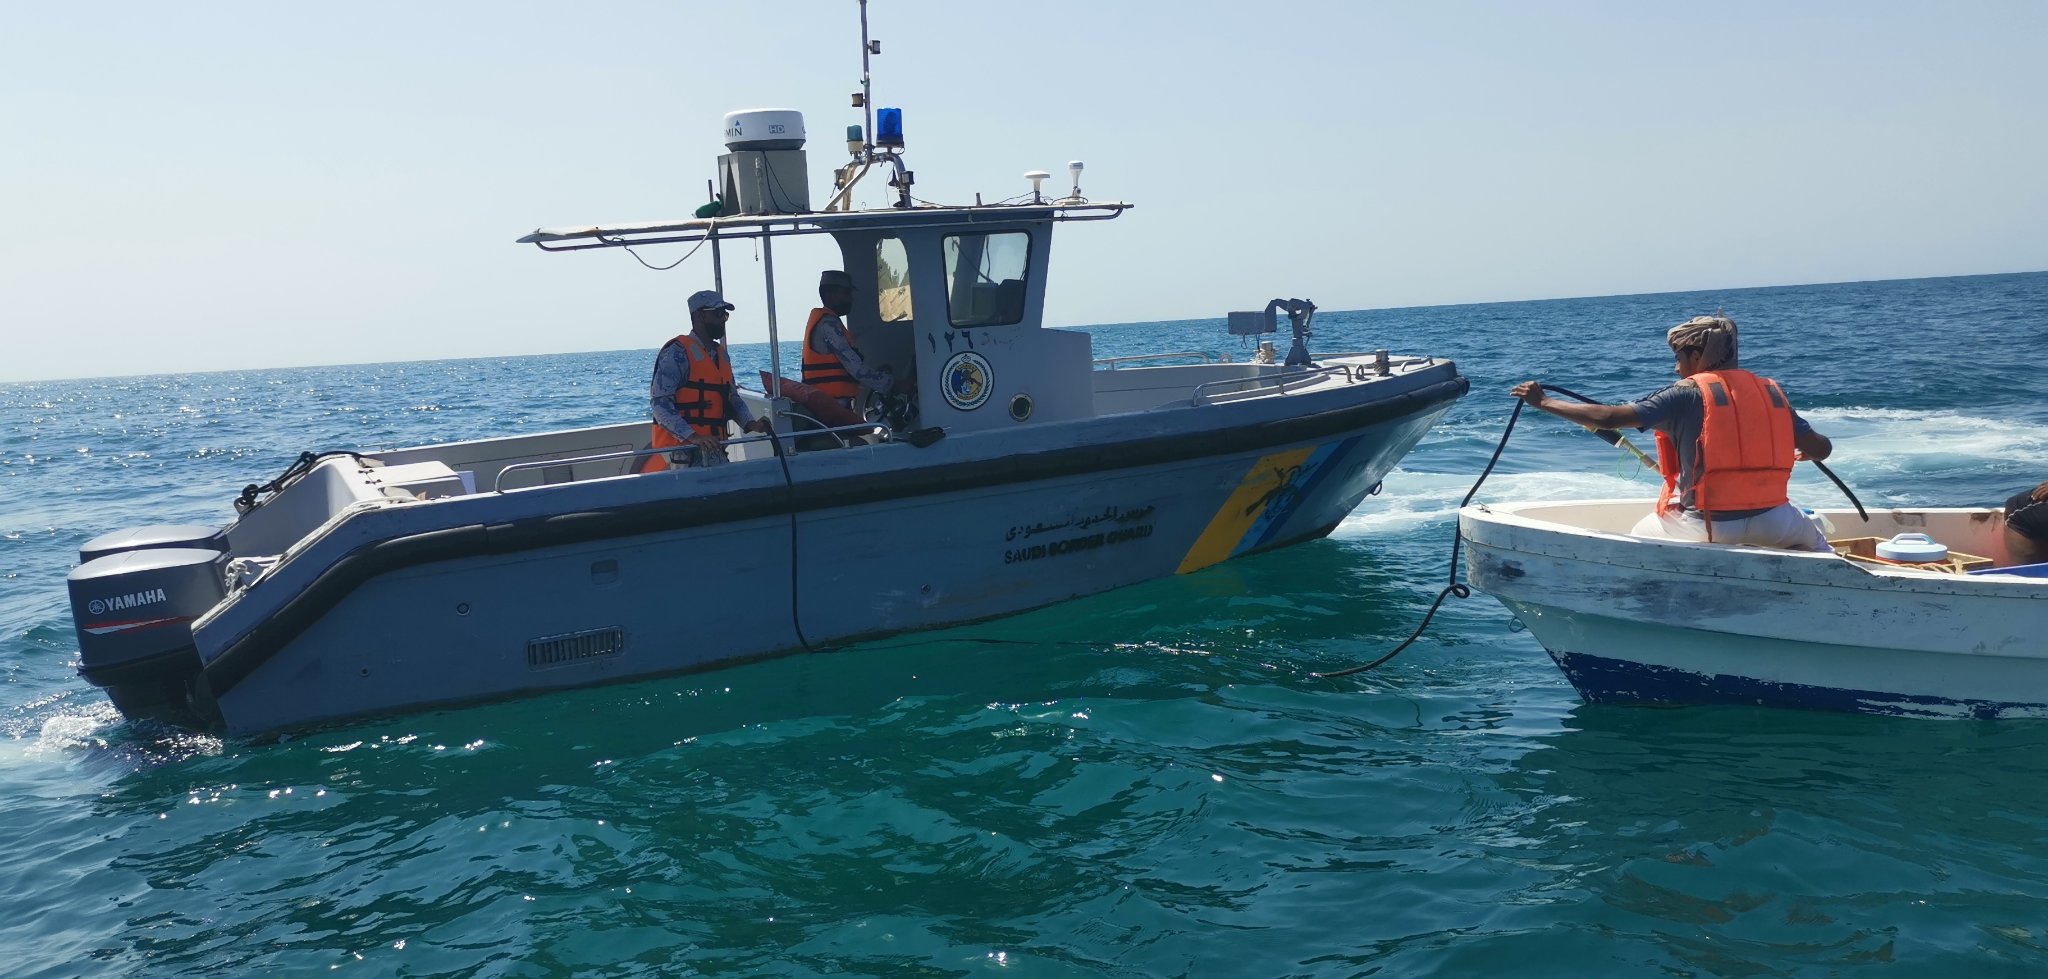 حرس الحدود بالمدينة ينقذ مواطنين تعرض قاربهما للعطل بعرض البحر